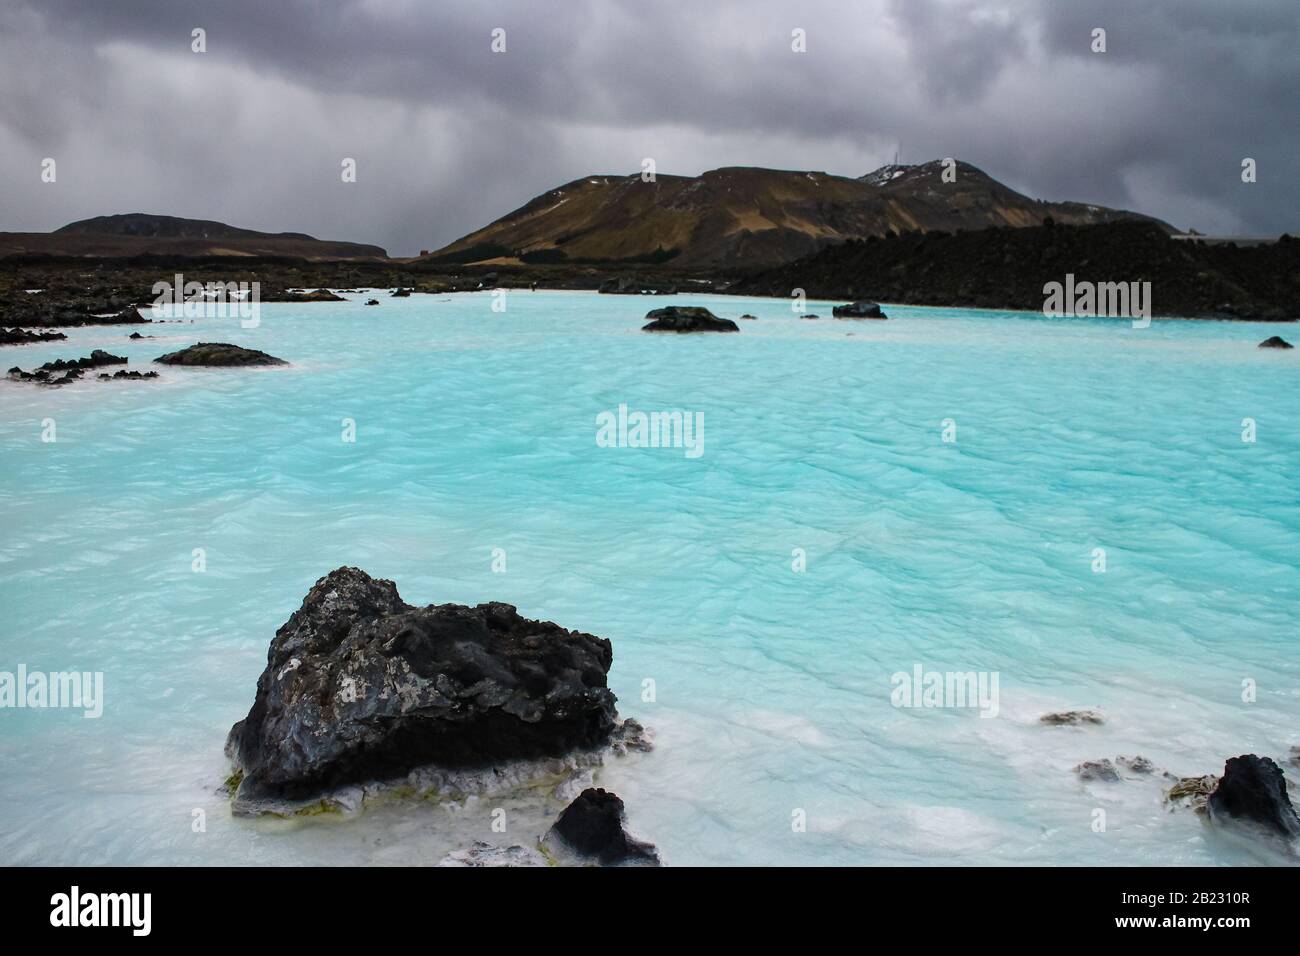 Le acque blu lattiginose della Laguna Blu dell'Islanda nel suggestivo paesaggio del Circolo d'Oro dell'Islanda sud-occidentale. Foto Stock